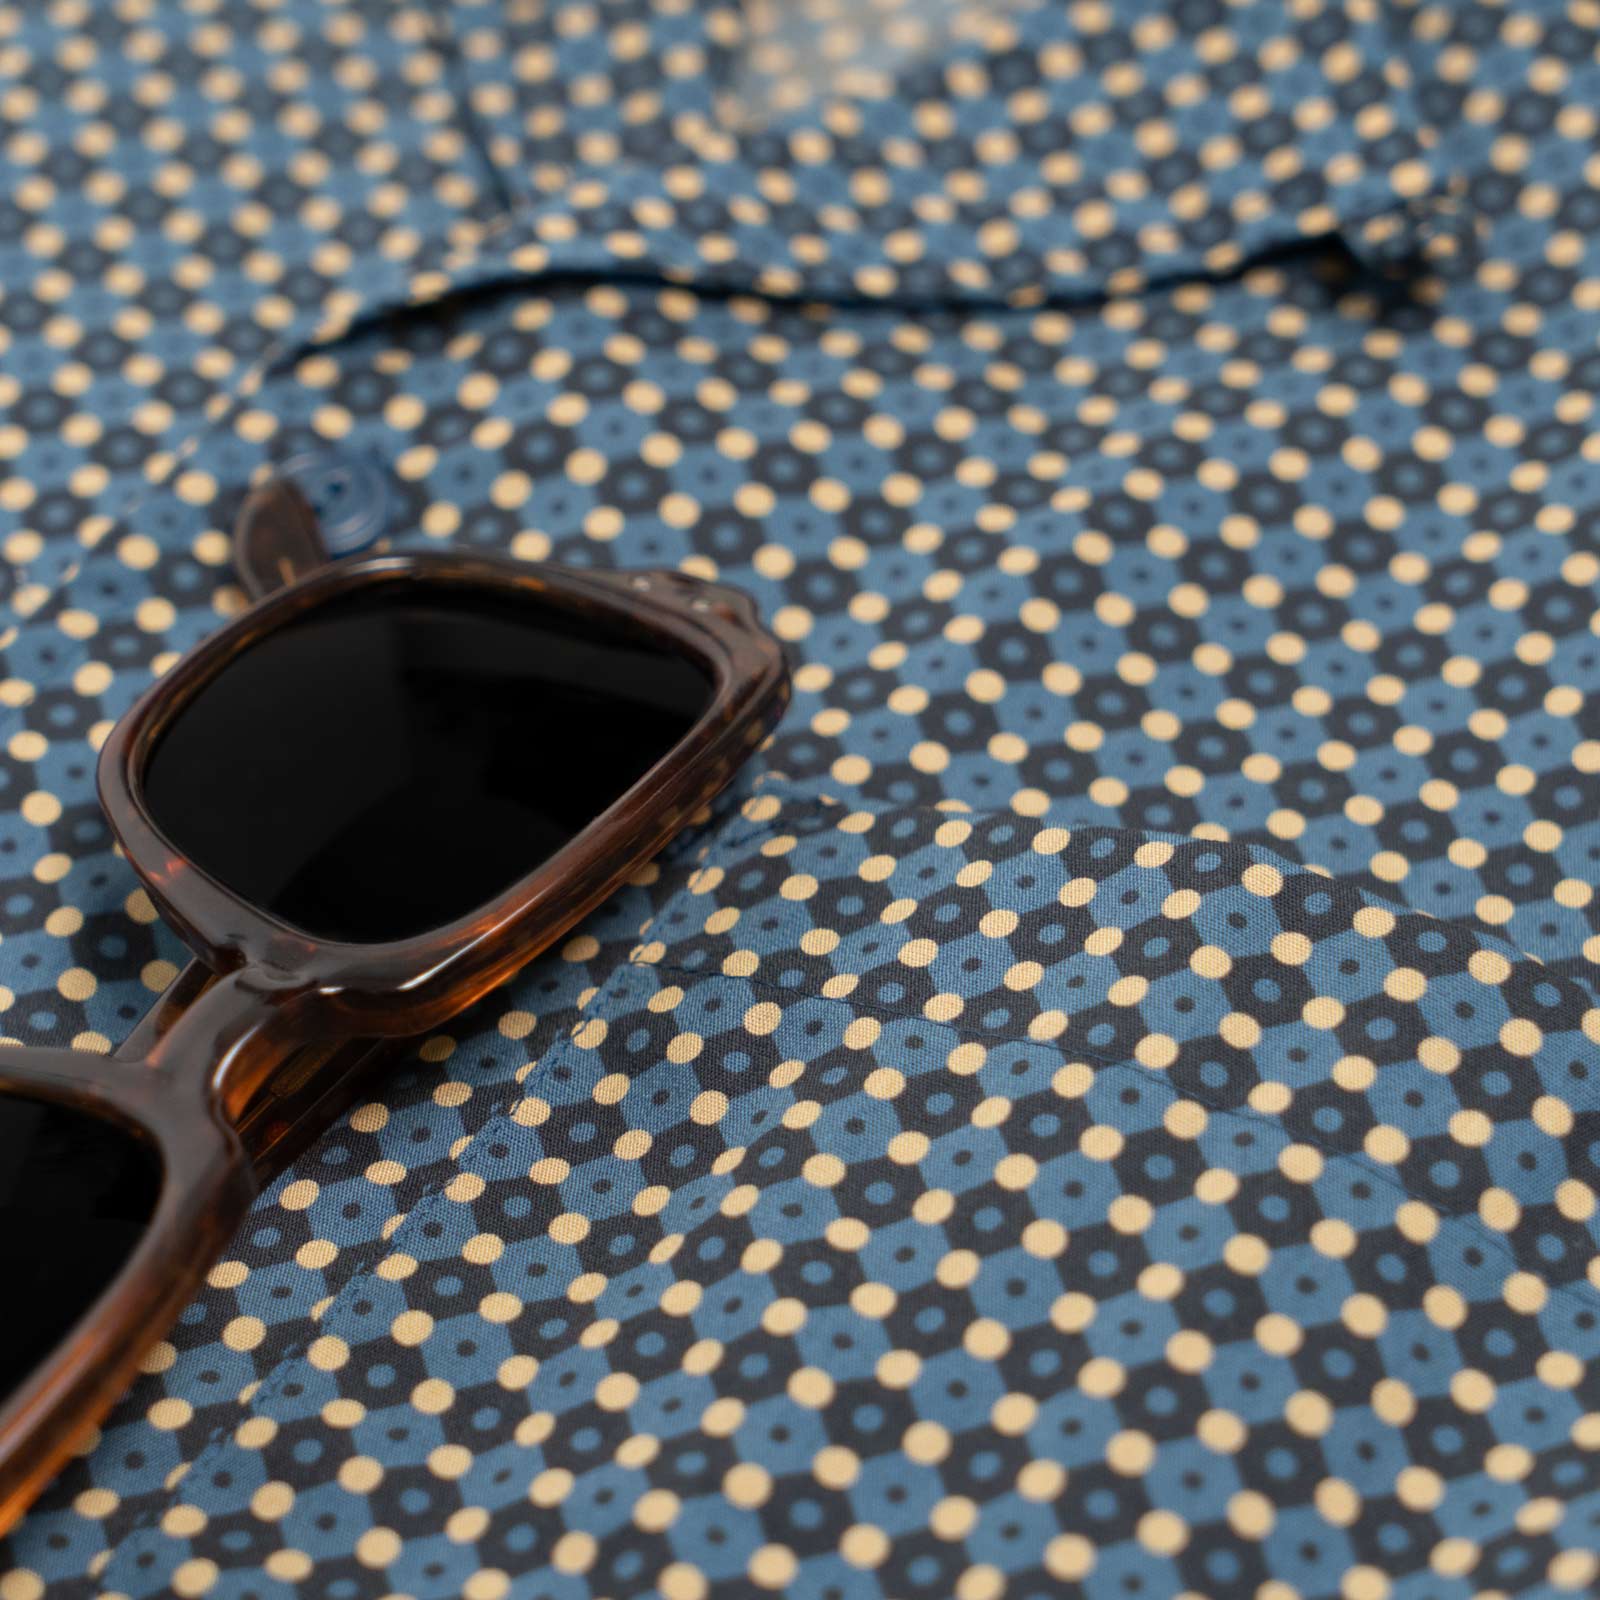 Camicia maniche corte - stampa geometrica fondo blu